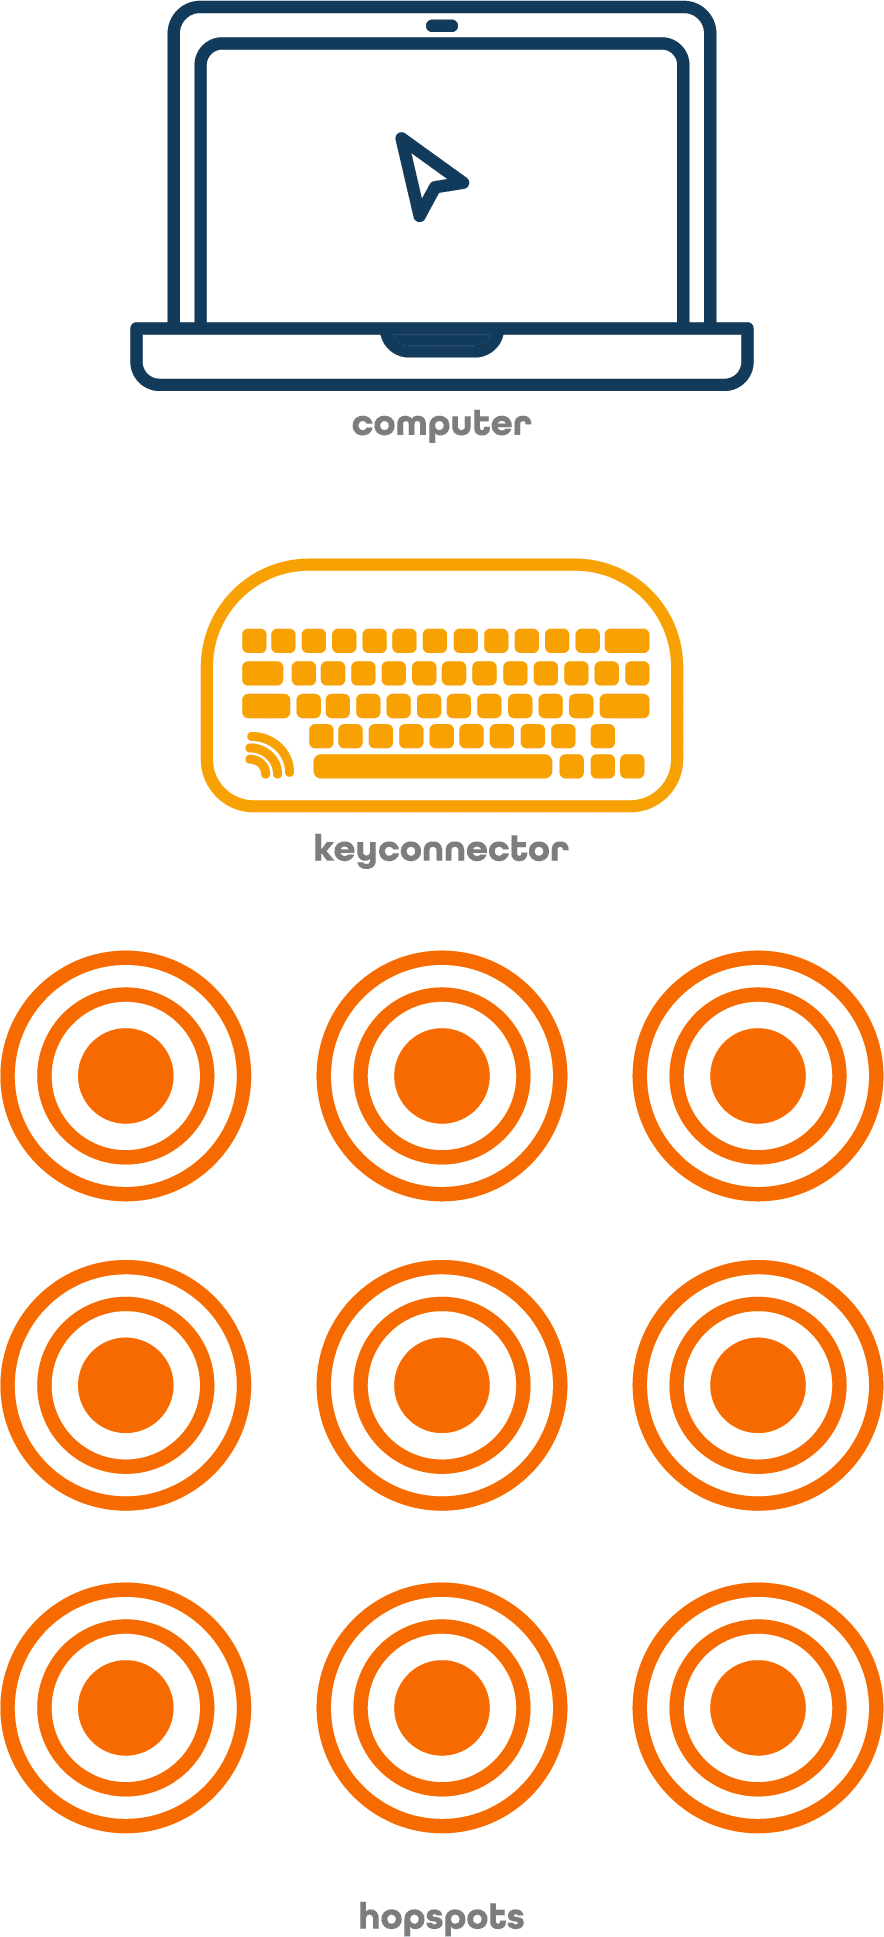 Materialer: Computer, key:connector og 9 Hopspots